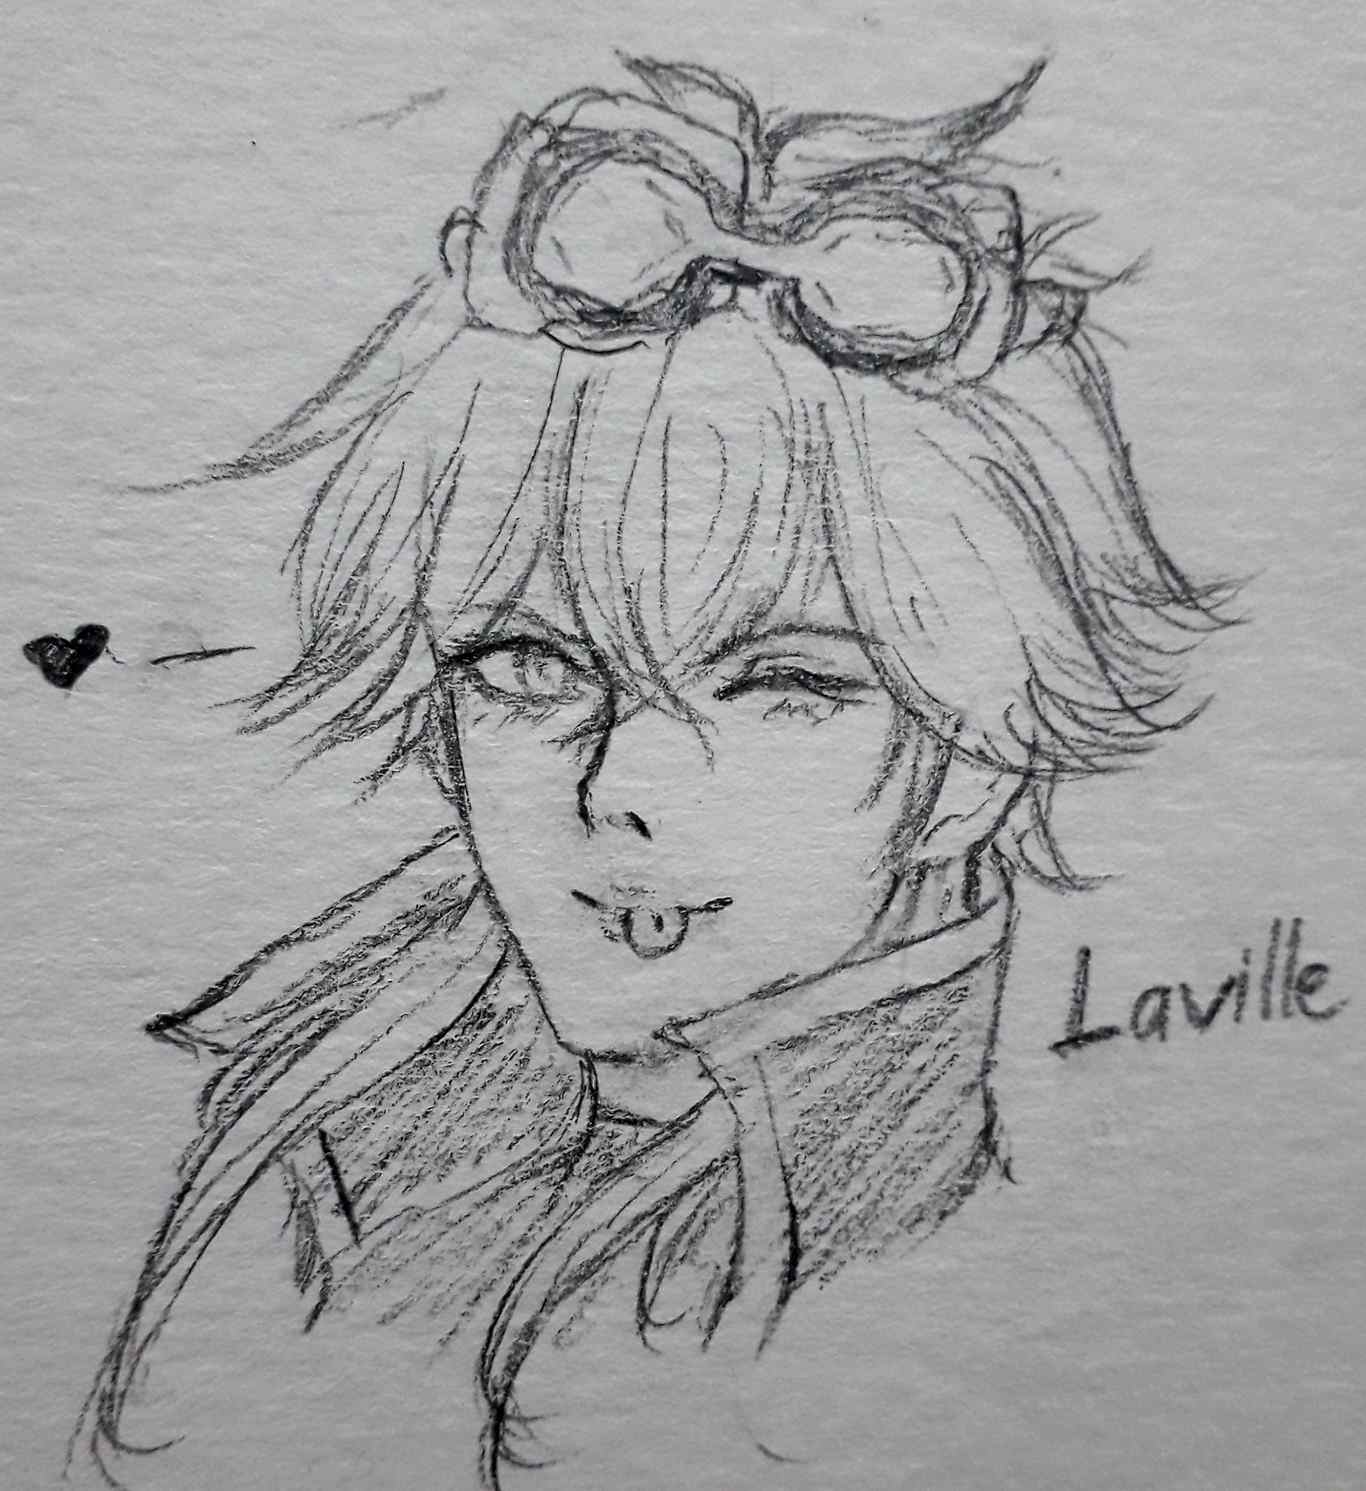 Hình vẽ Laville bằng bút chì